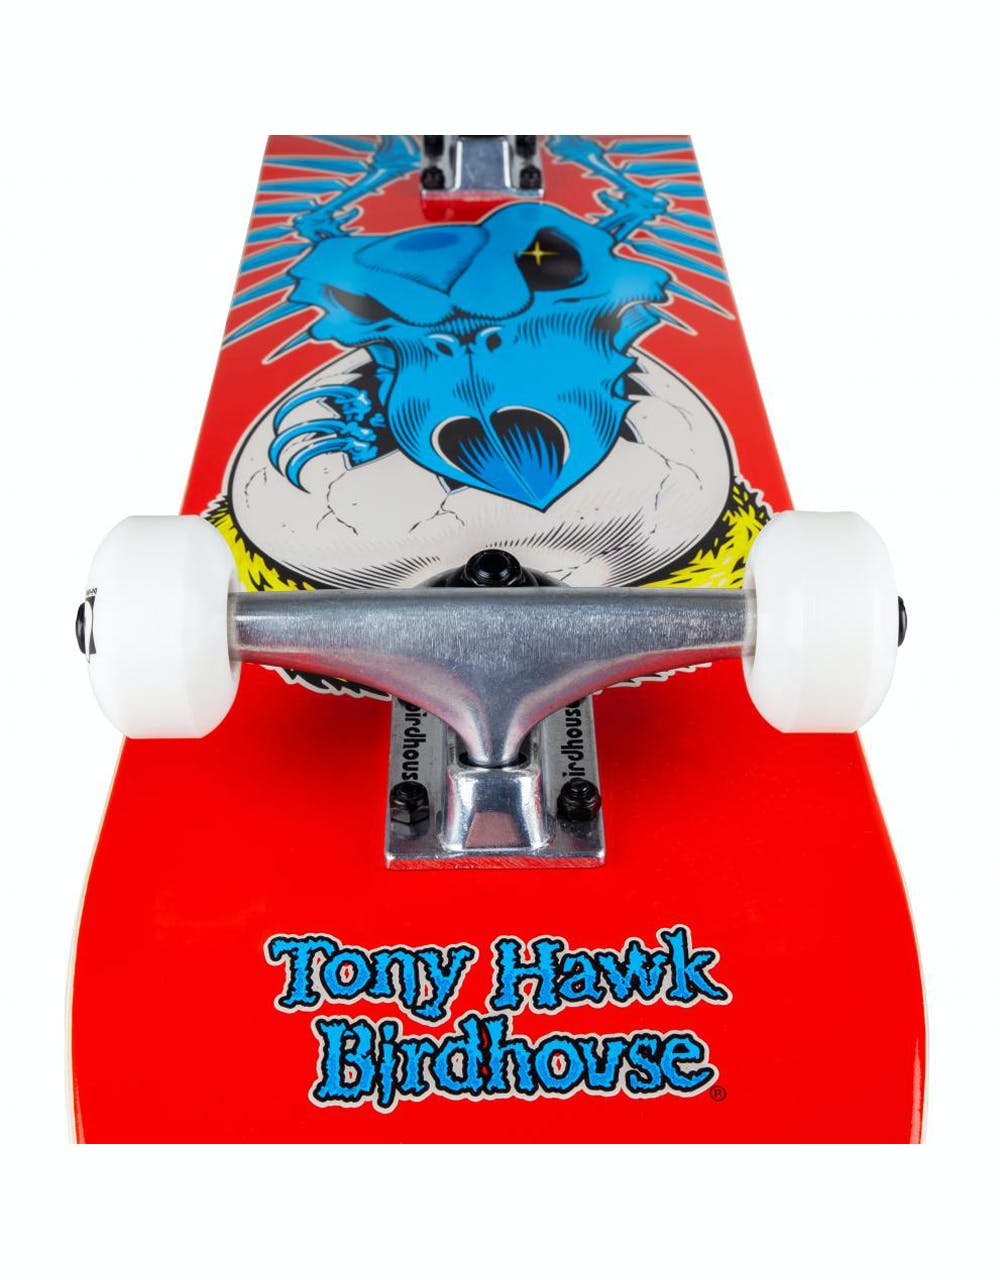 Birdhouse Falcon Egg Complete Skateboard - 7.75"